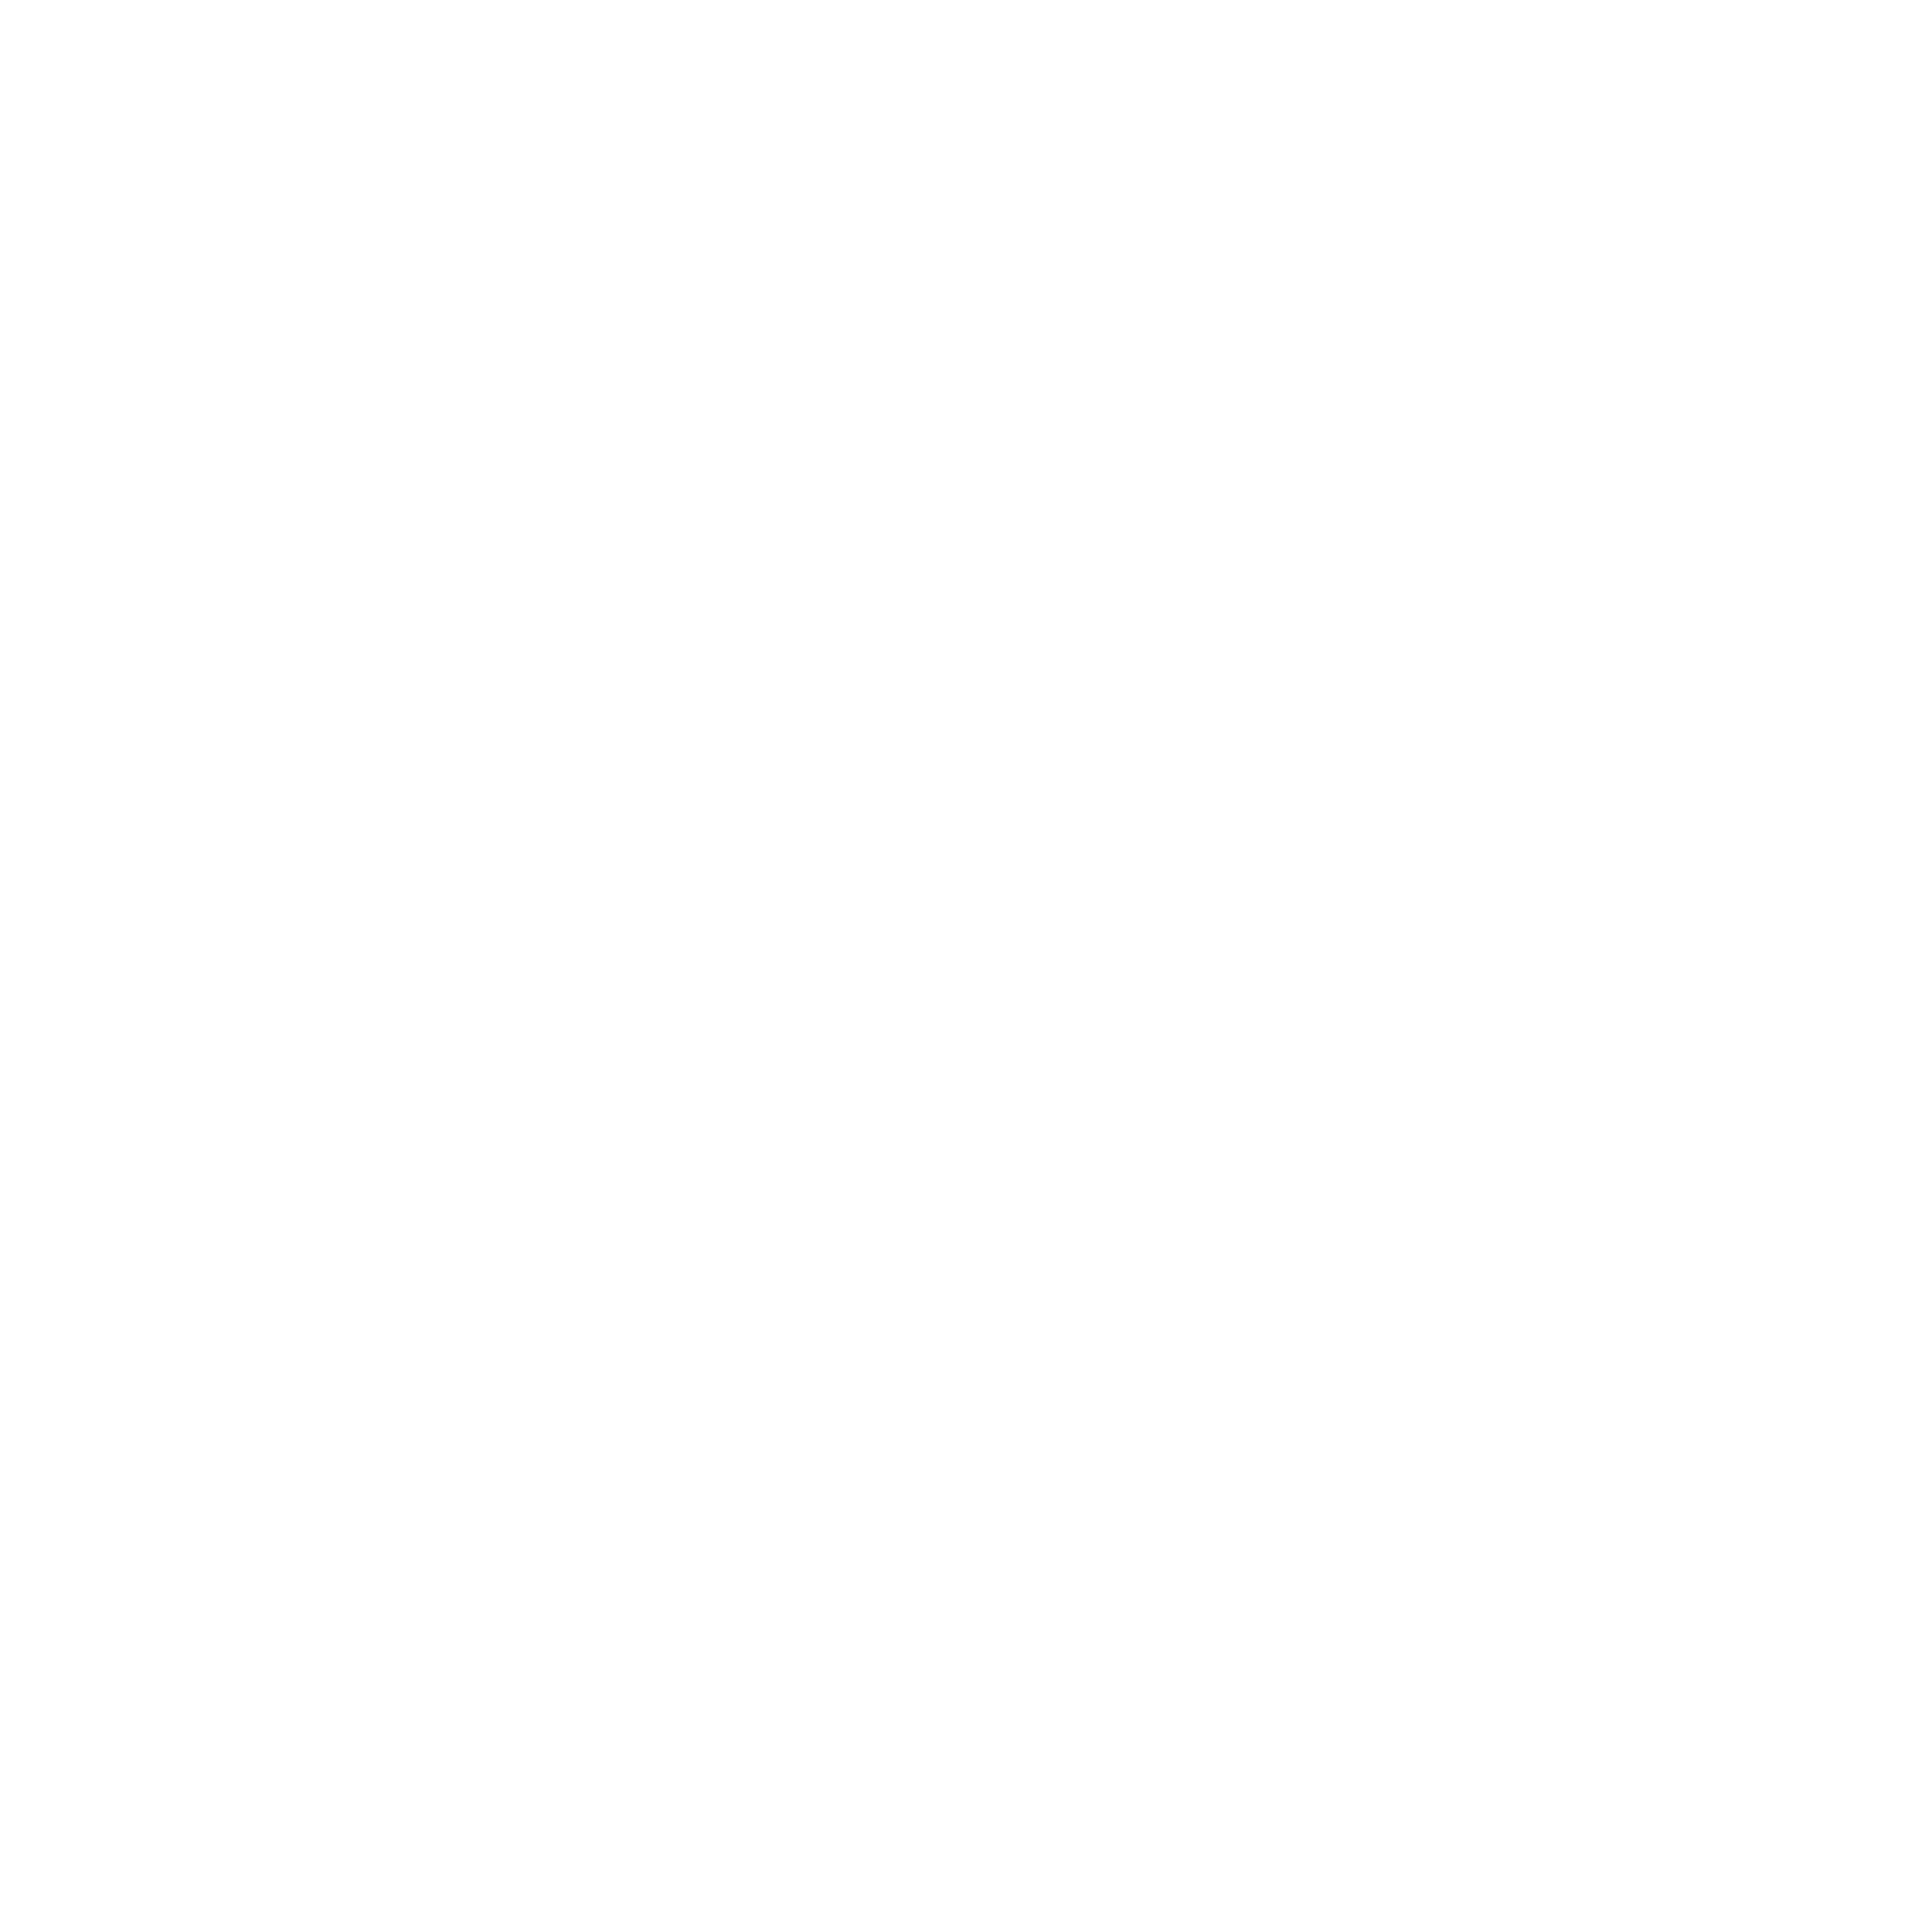 Hair by Kayti